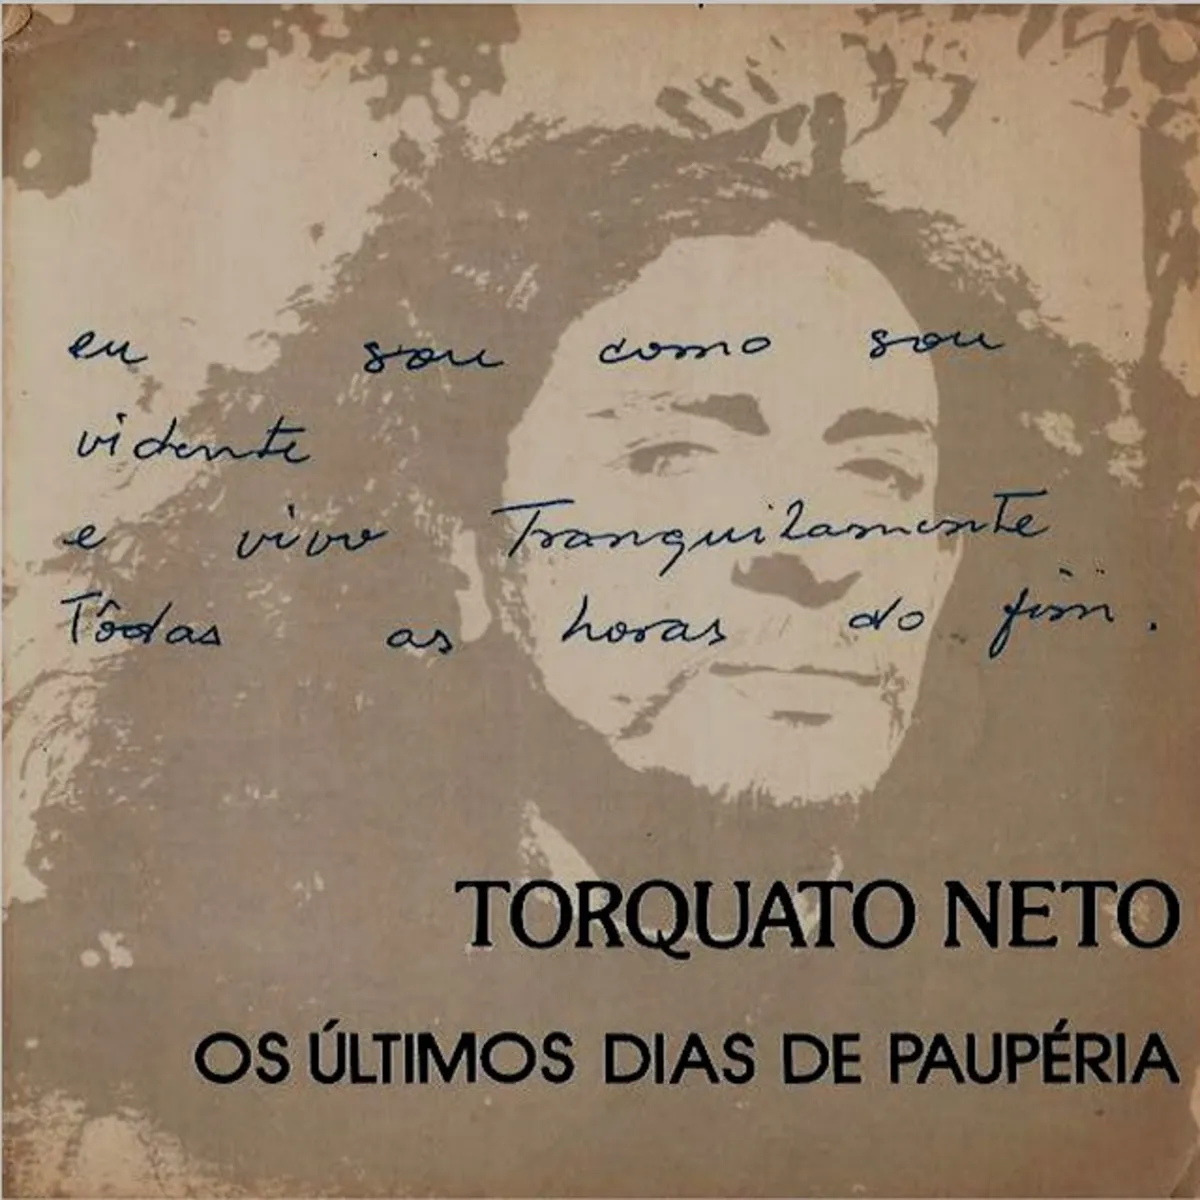 Capa da primeira edição de Os Últimos Dias de Paupéria, de Torquato Neto, publicada em 1973